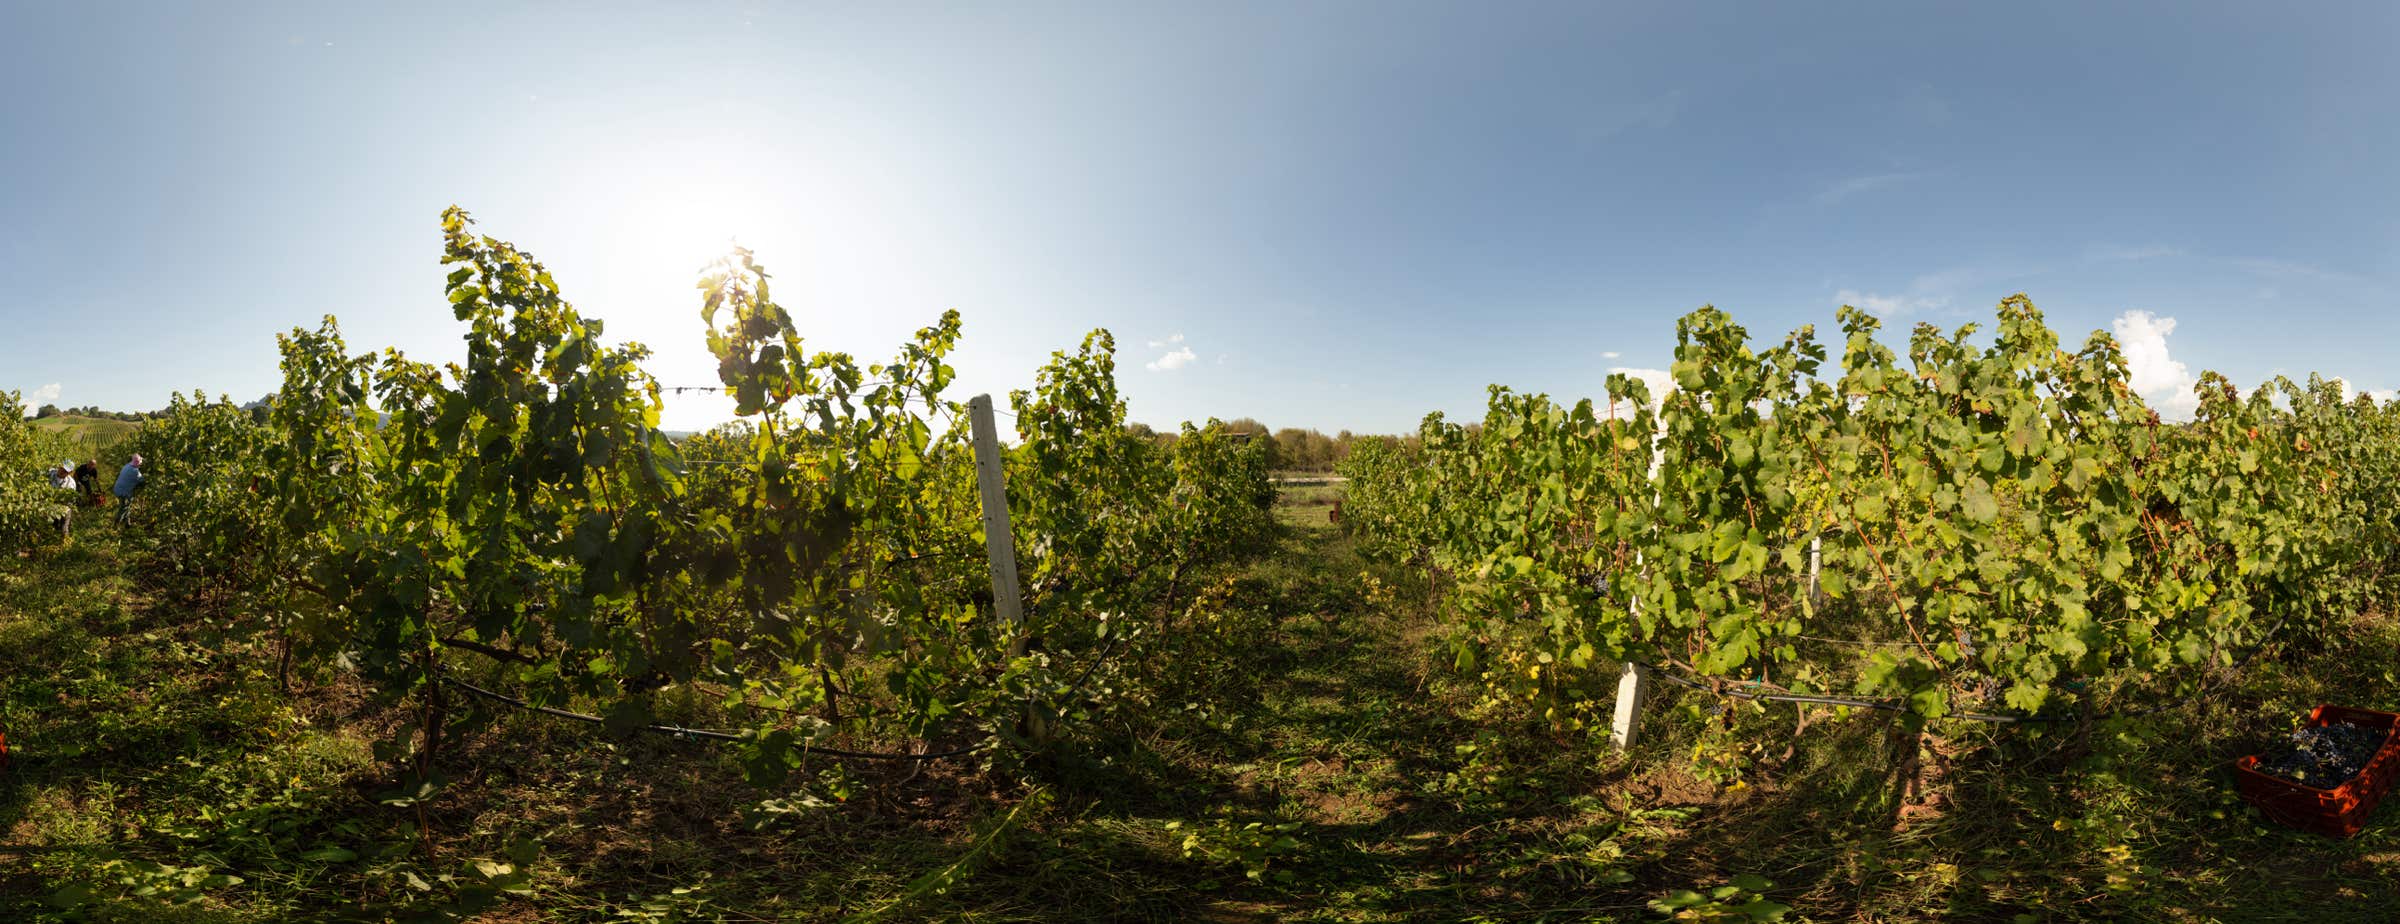 Slika prikazuje 360-stopinjski pogled na vinograd med trtami. Delavci obirajo grozdje.